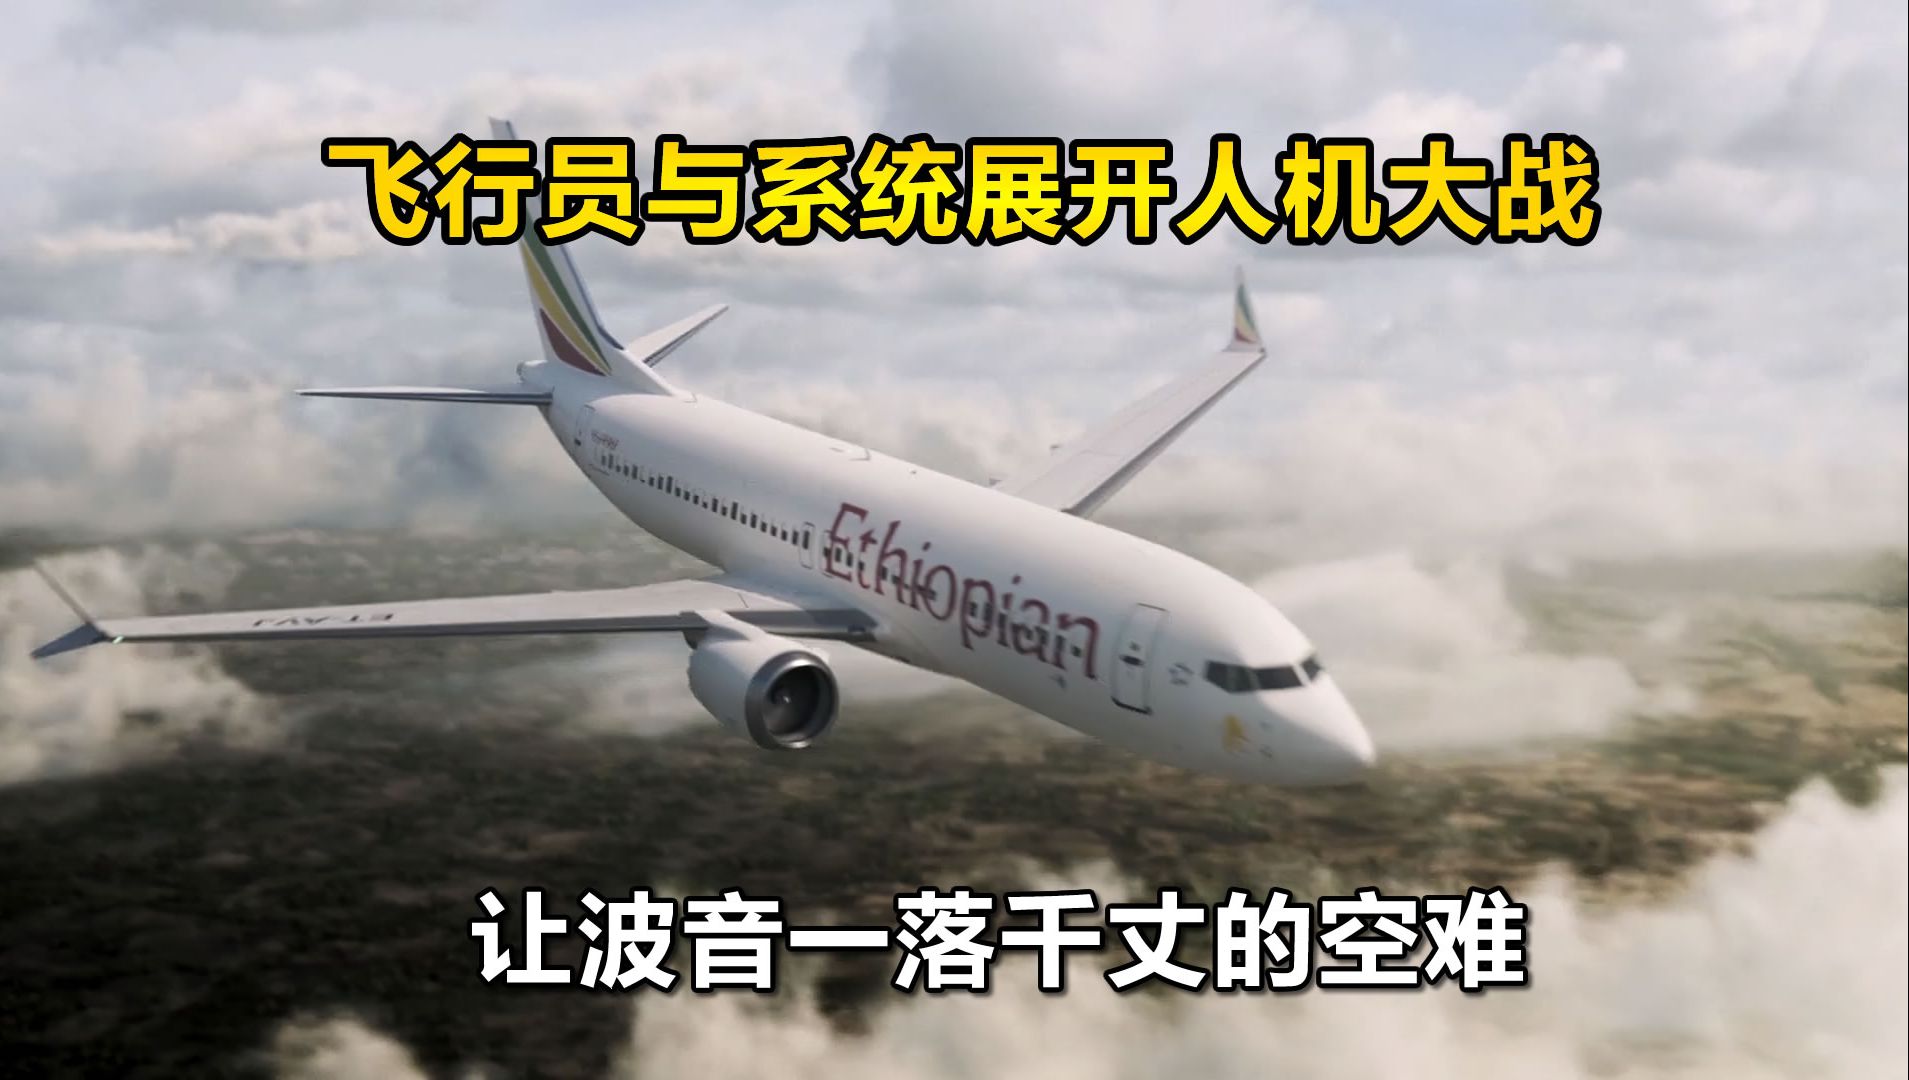 系统空中竟与飞行员争夺飞机控制权，一场导致波音一落千丈的空难，2019年3月10日埃塞俄比亚航空302号班机事故